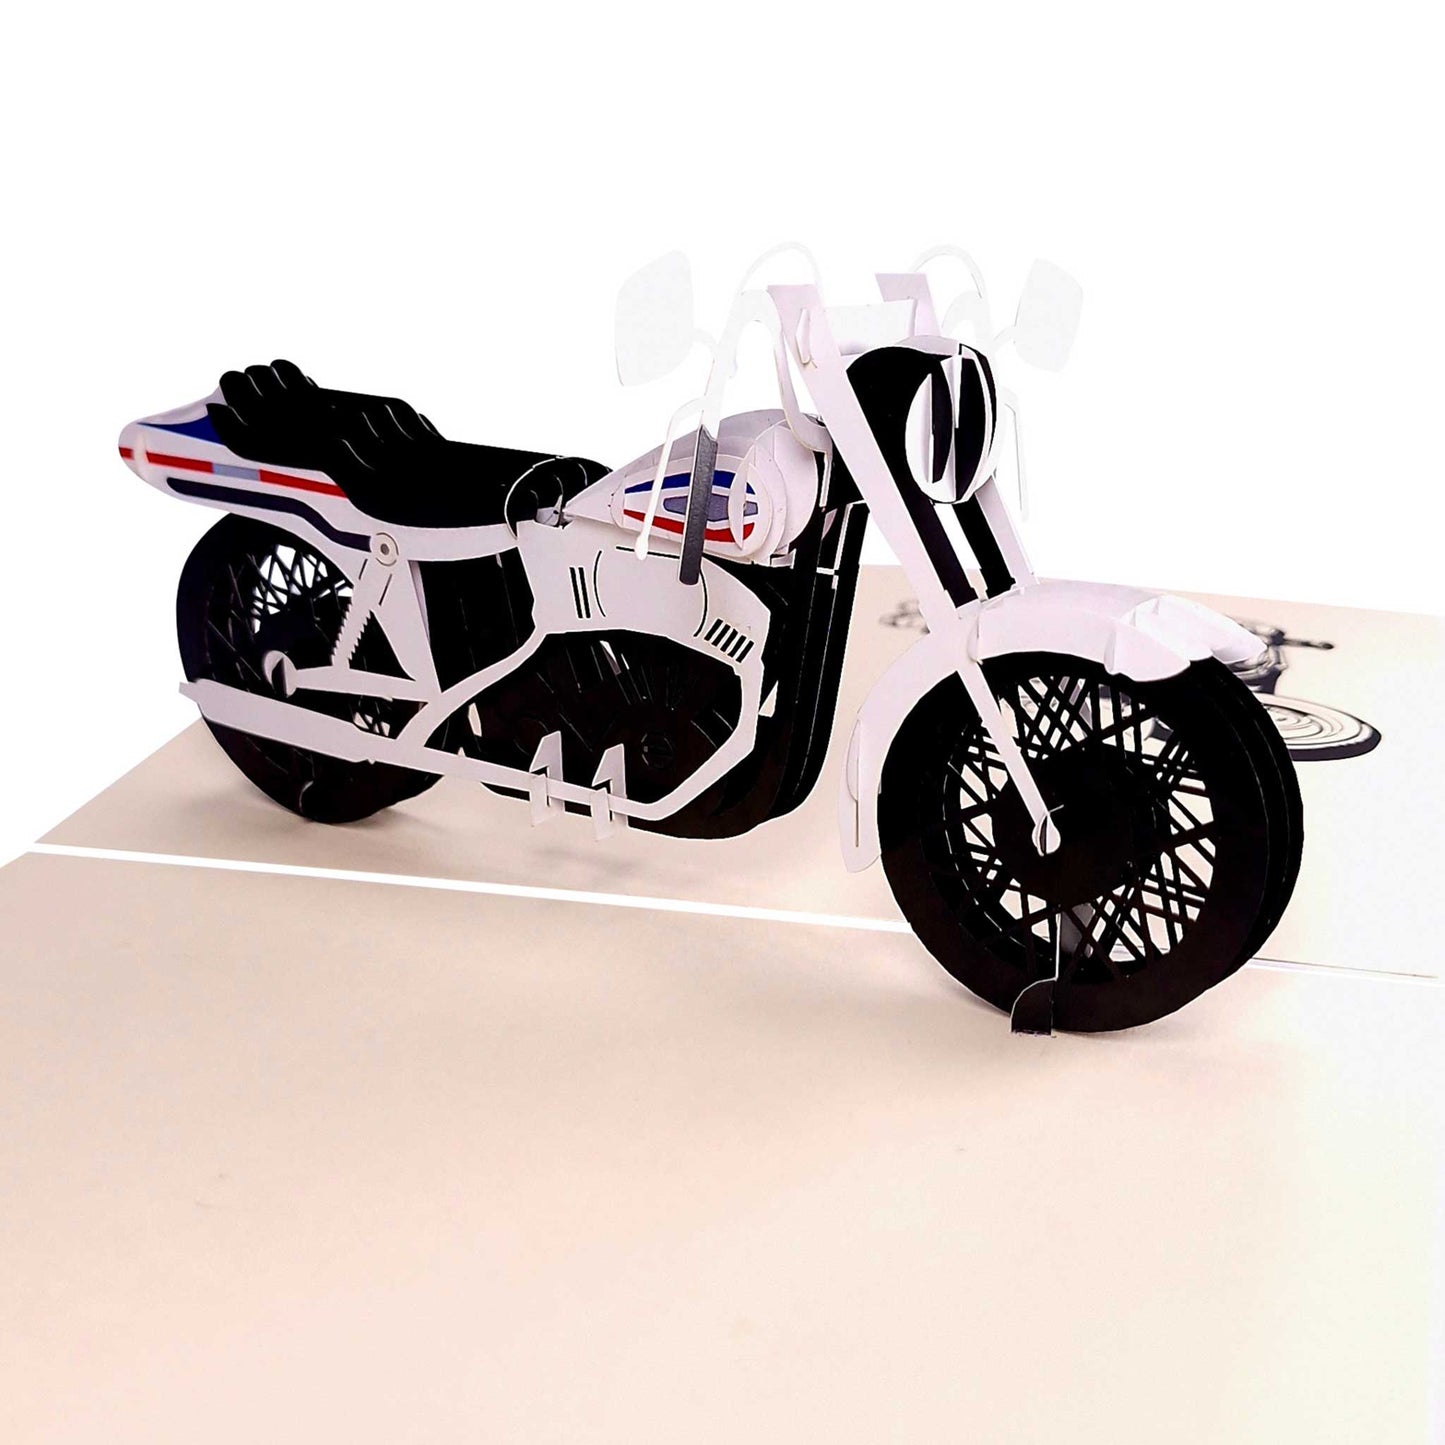 3D Kartka - Motocykl (biały)